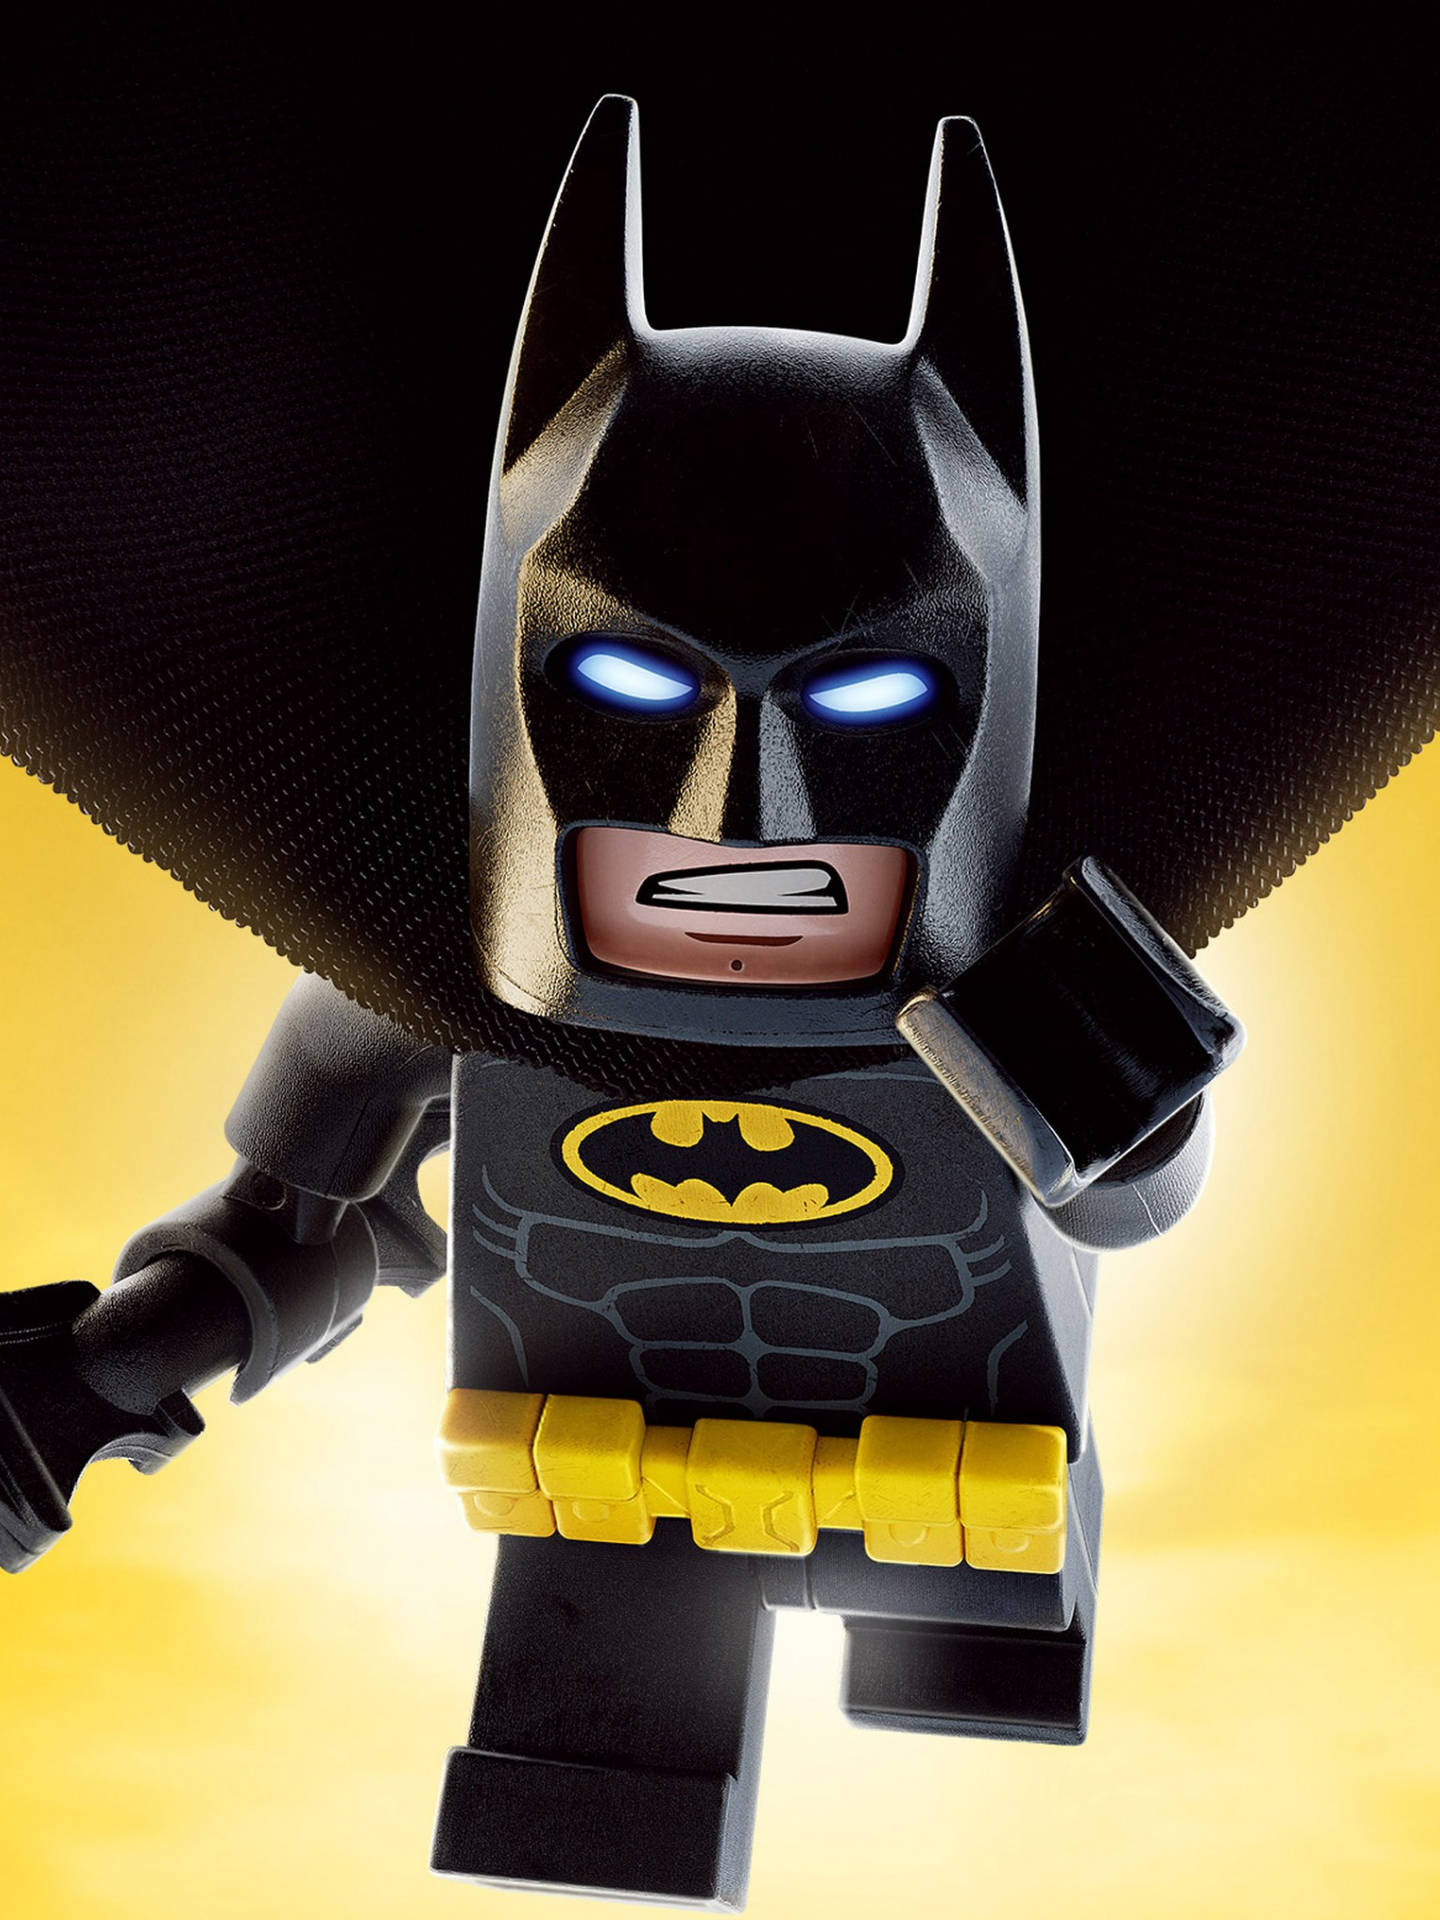 Brucewayne Från Lego Batman-filmen. Wallpaper